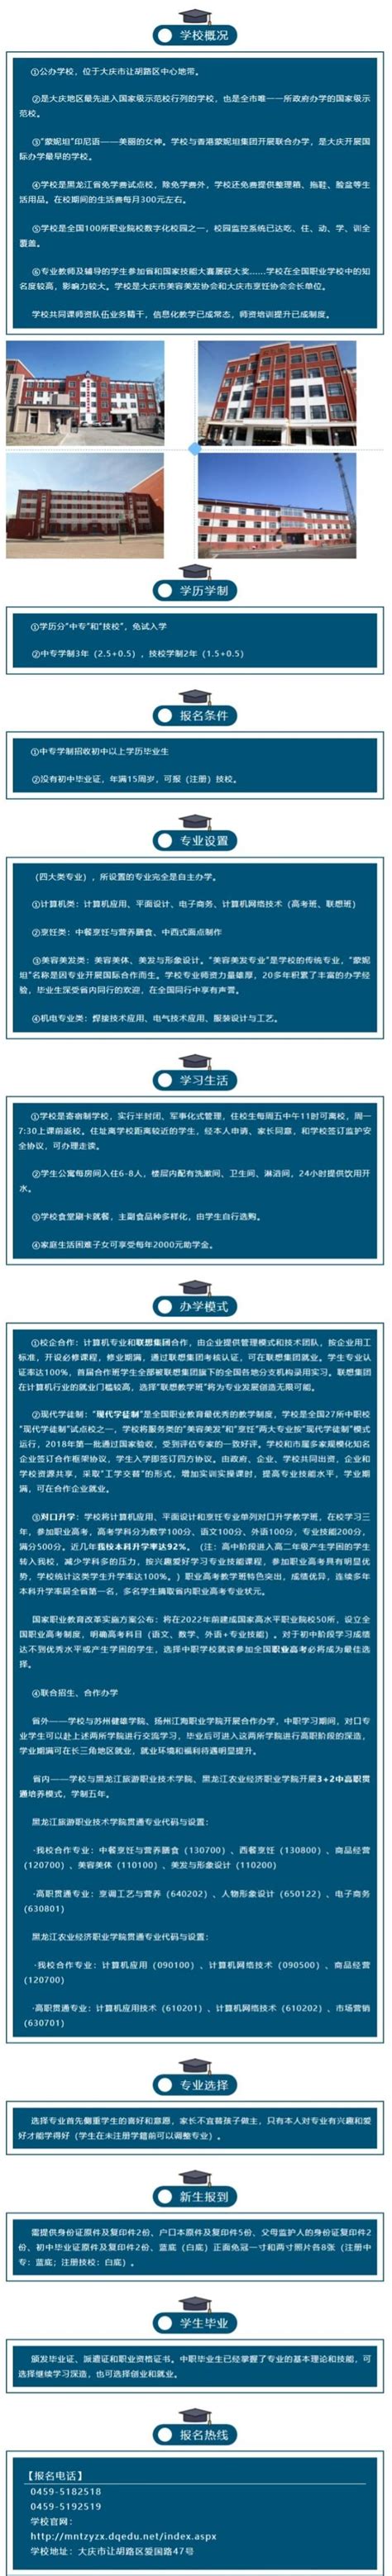 大庆市蒙妮坦中等职业技术学校2020年招生简章 - 职教网